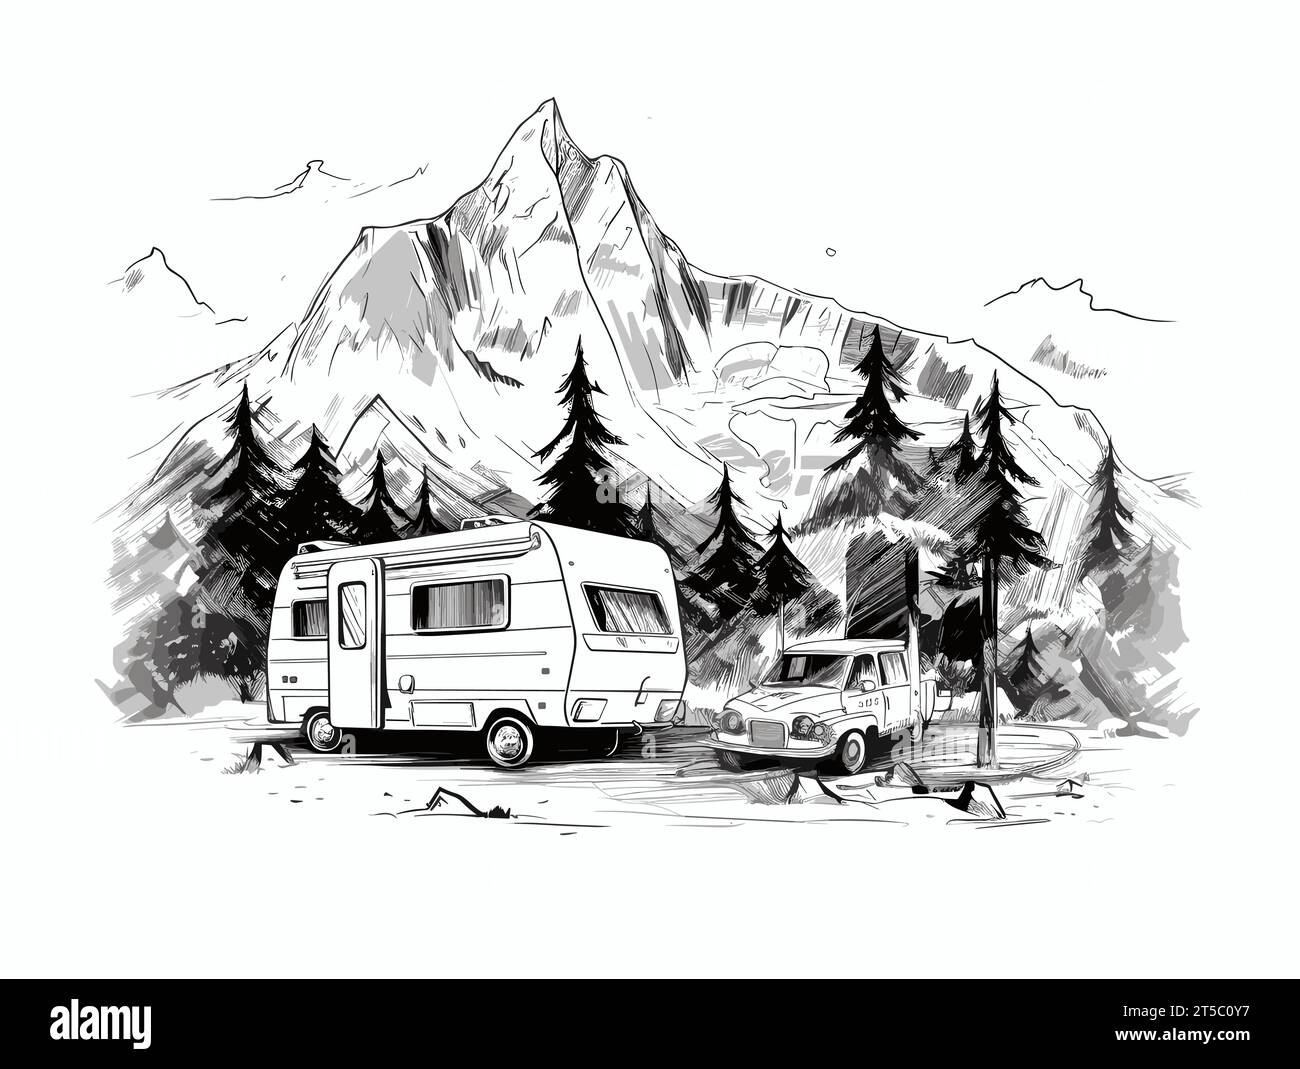 Dessin du camping avec tente caravane camping-car illustration des montagnes rocheuses séparées, balayant les lignes surtirées. Illustration de Vecteur